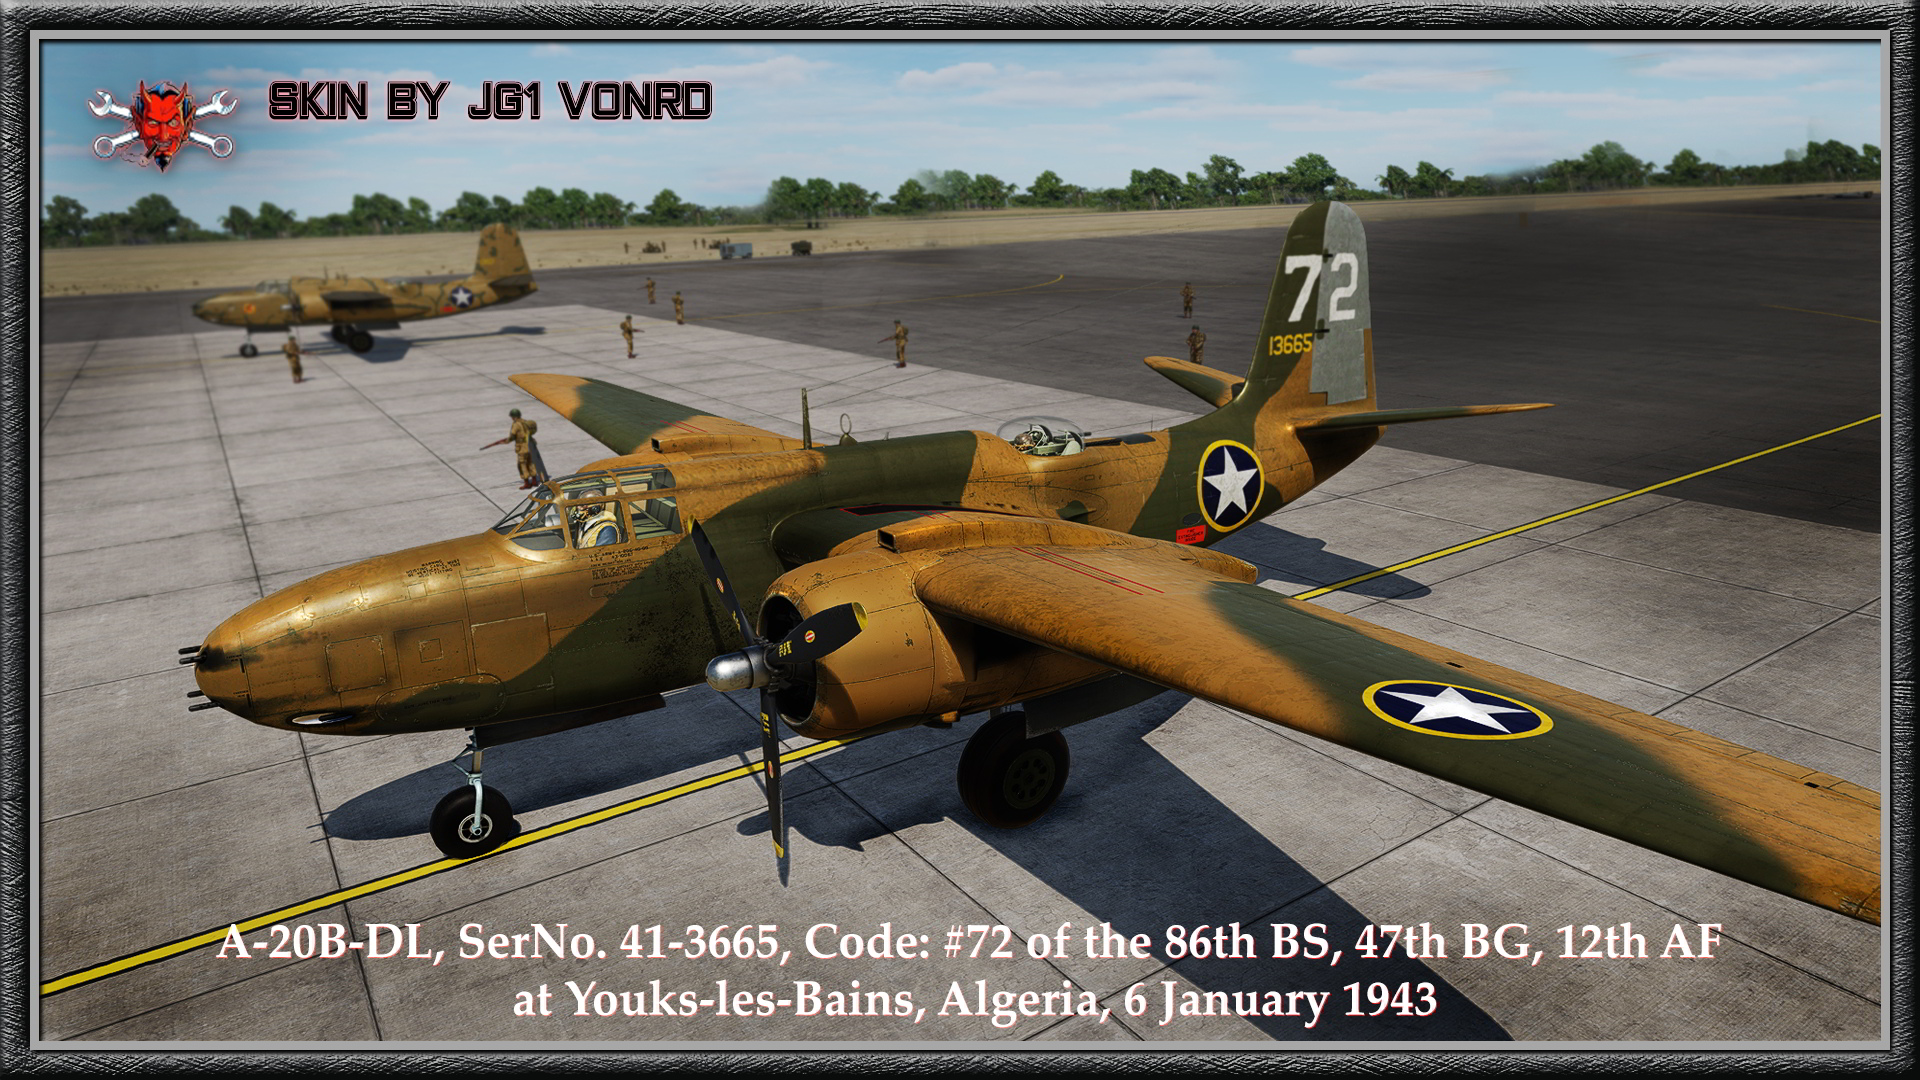 A-20 - USAF_86th BS 47th BG N. Africa No 72